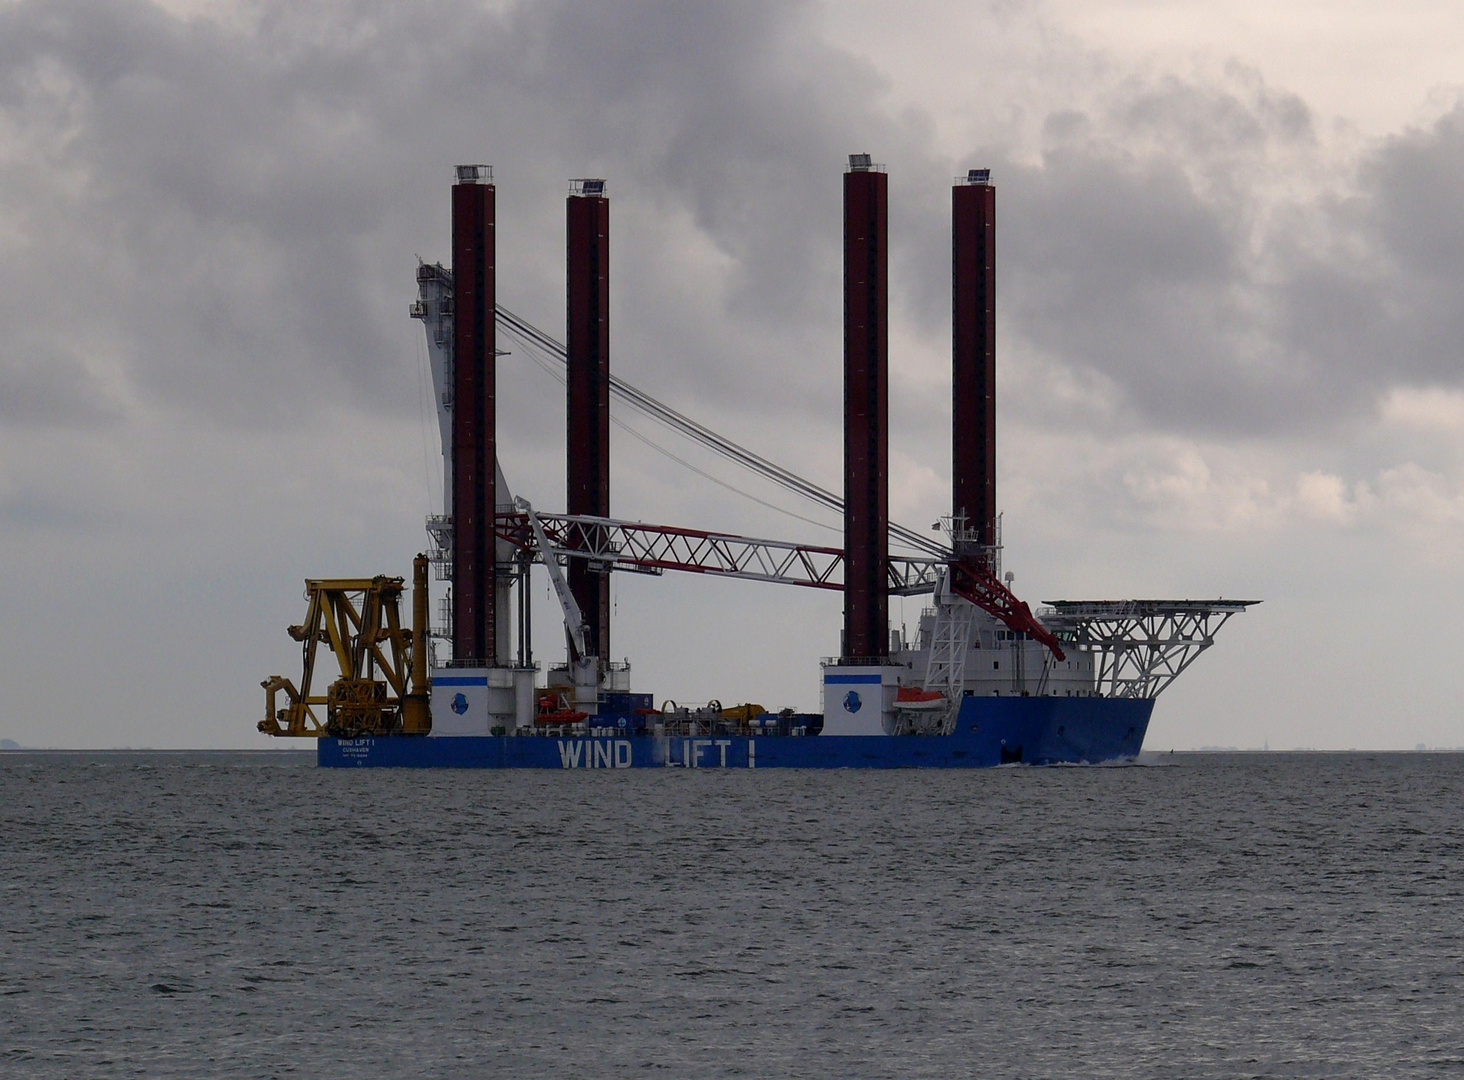 Borkum 2010 - "Wind Lift" (Bauschiff für den Windpark)